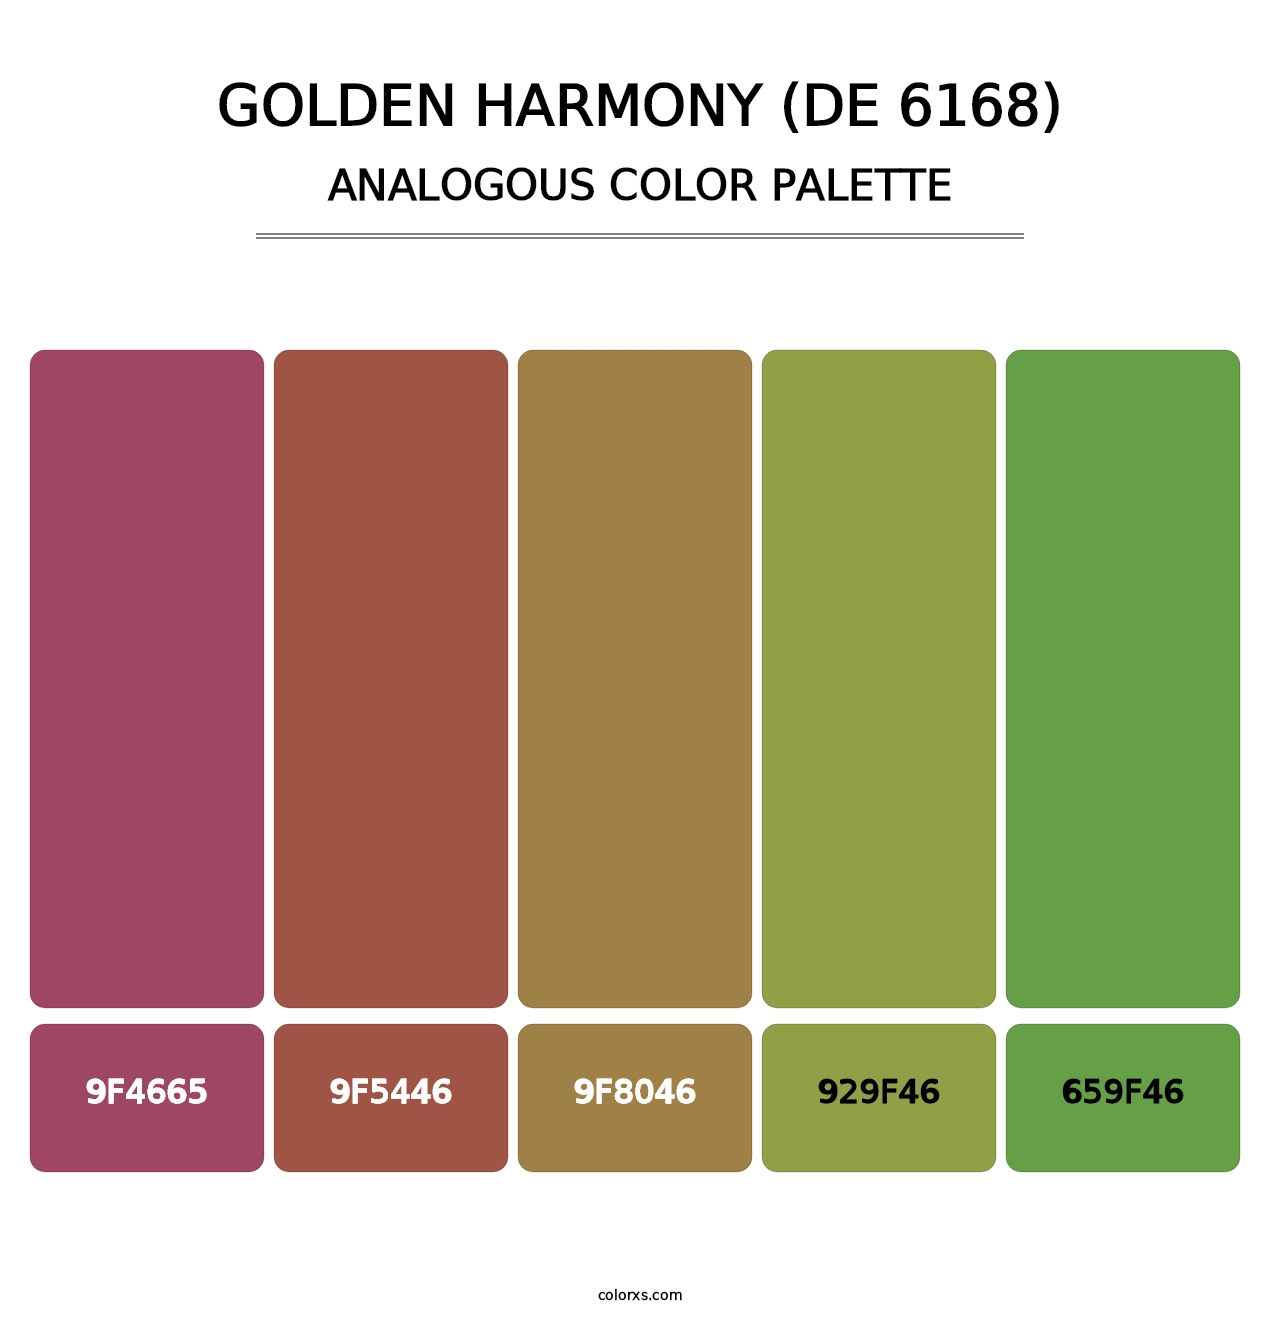 Golden Harmony (DE 6168) - Analogous Color Palette